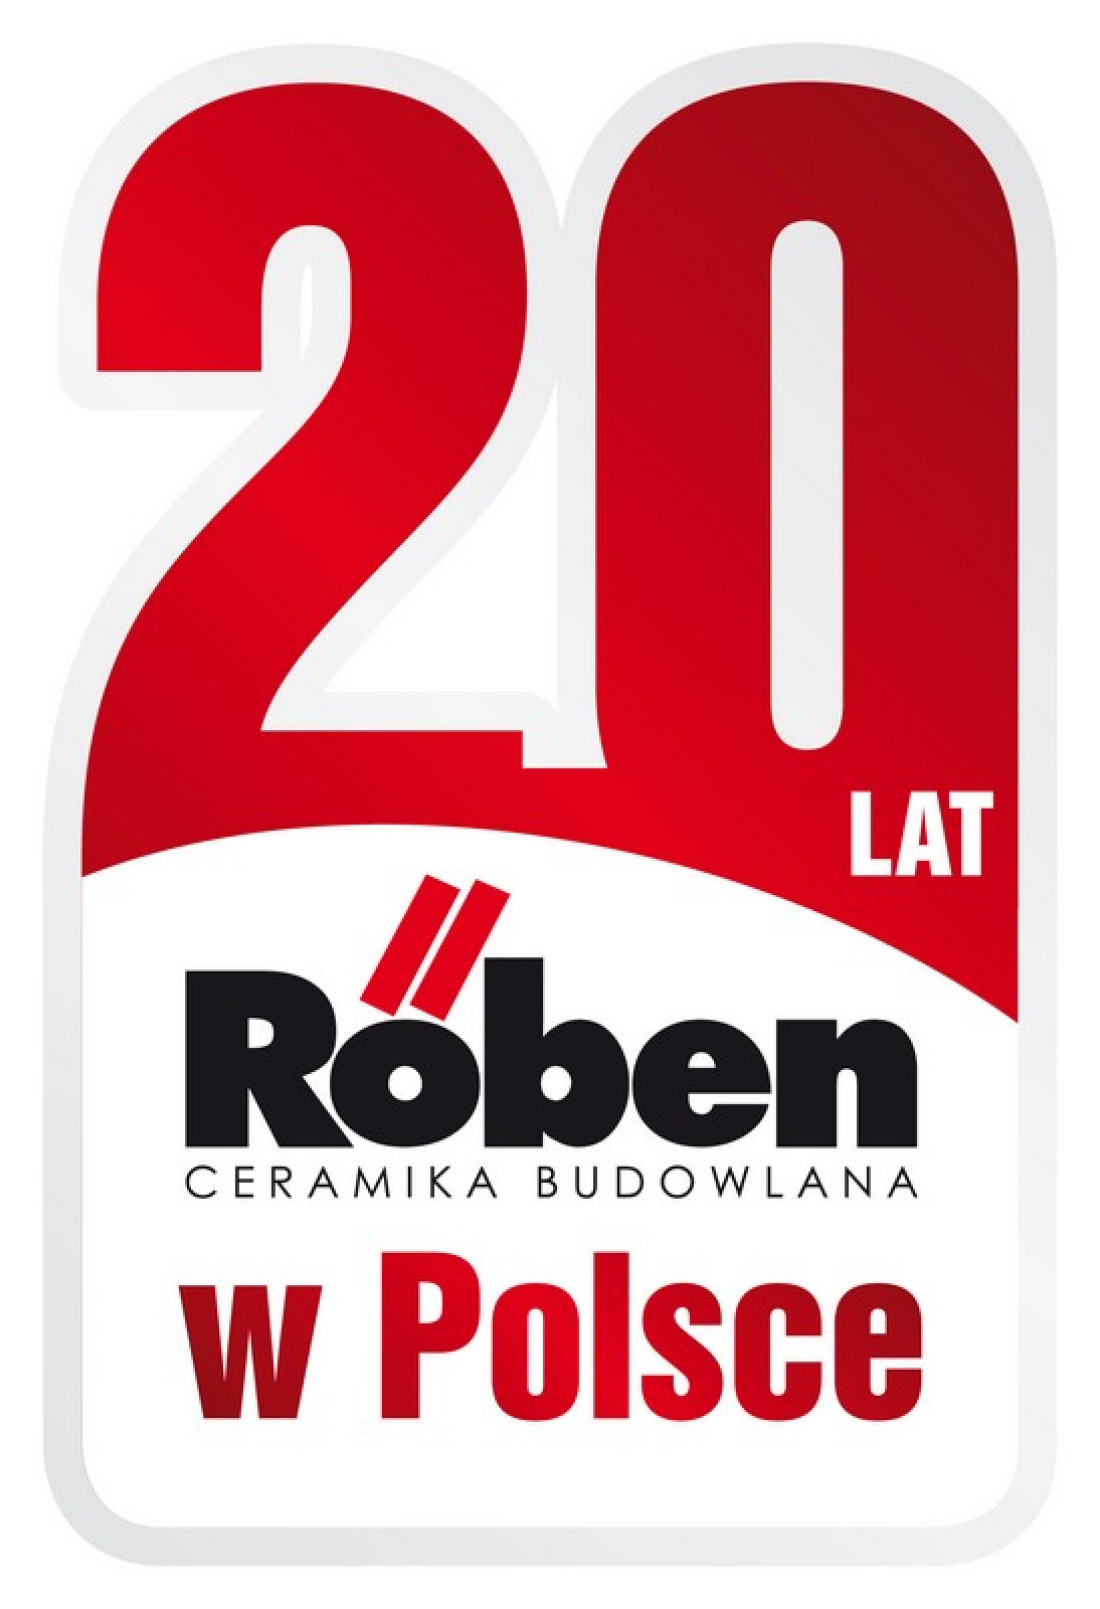 Atrakcyjne ceny produktów Röben podczas dni otwartych w hurtowniach!